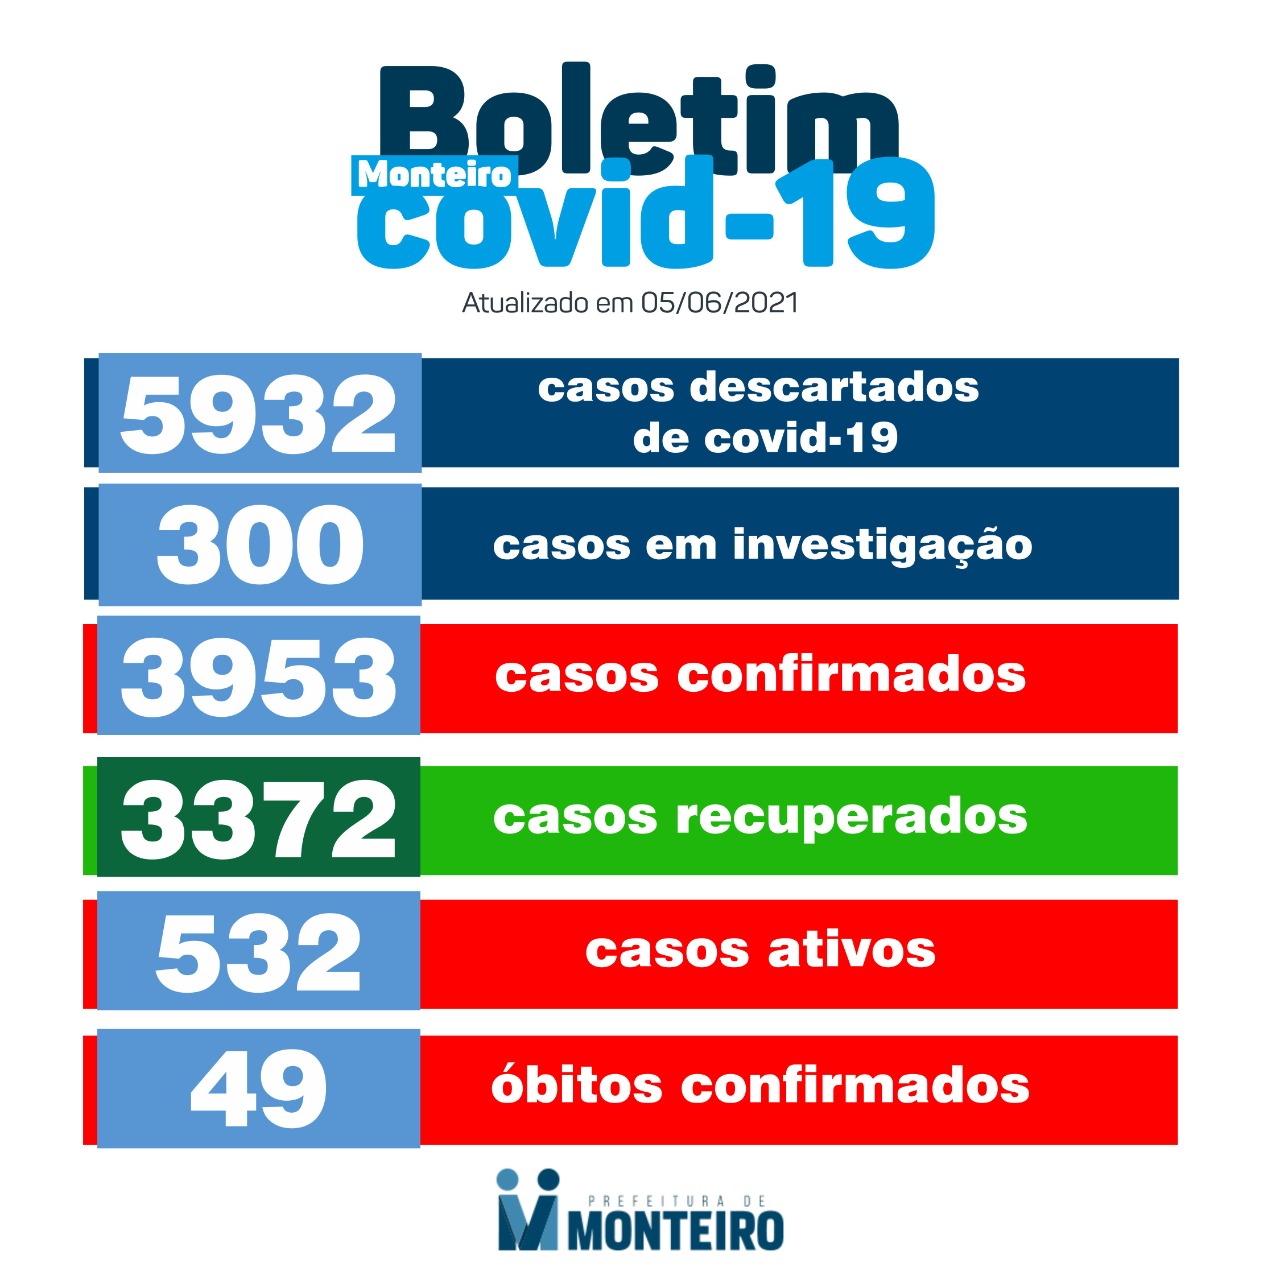 2CF125E5-DA50-4187-AE83-37C00C5BEC0E Neste sábado: Monteiro registra mais 45 novos casos de Covid-19